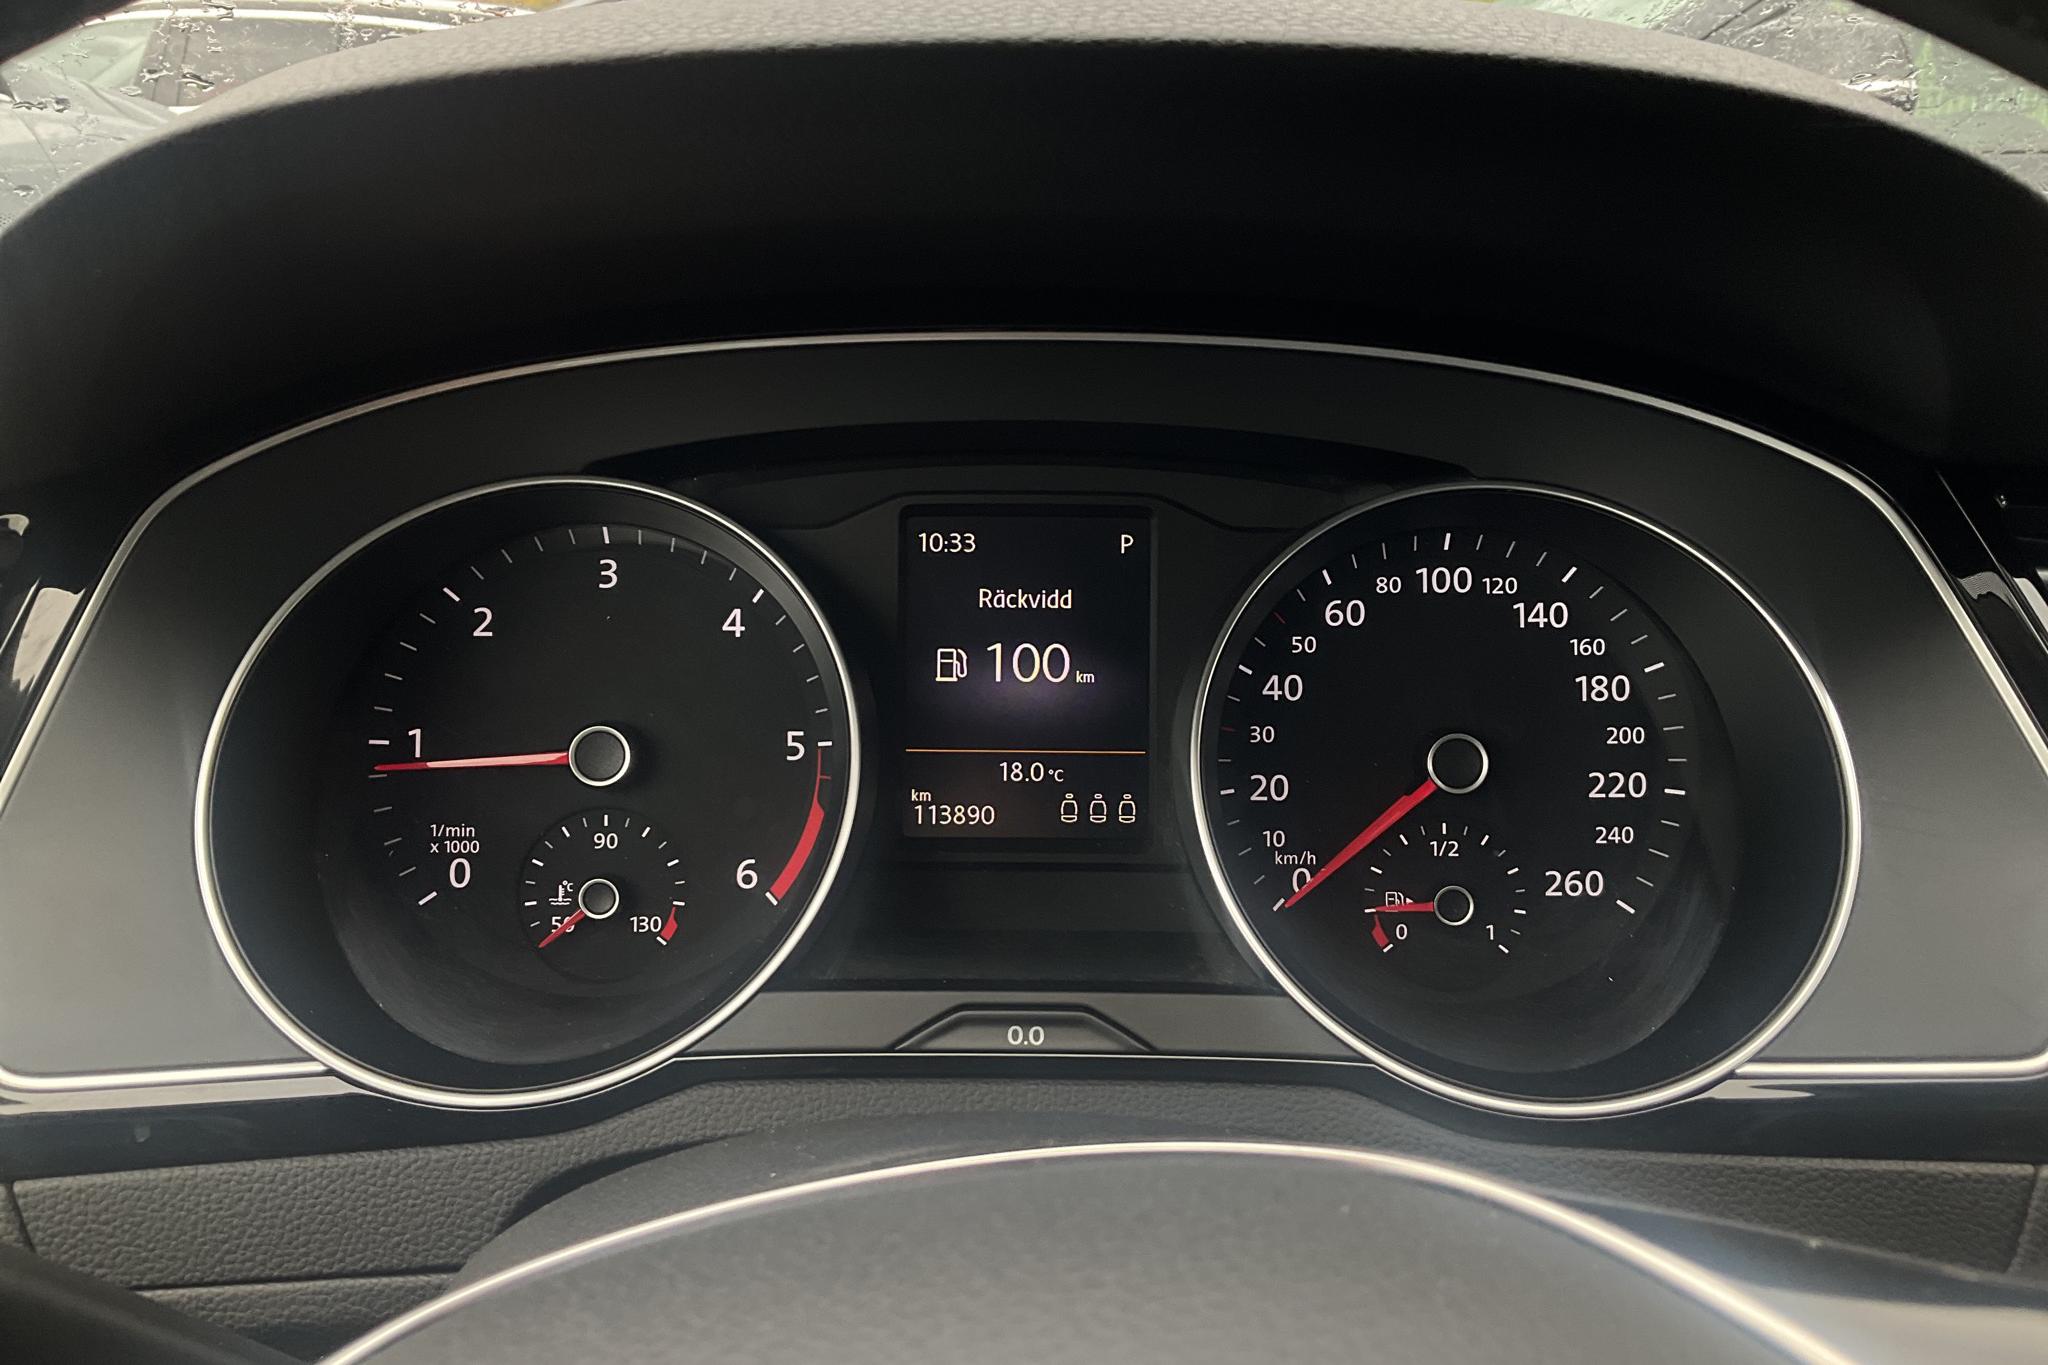 VW Passat 2.0 TDI BiTurbo Sportscombi 4MOTION (240hk) - 11 389 mil - Automat - vit - 2016